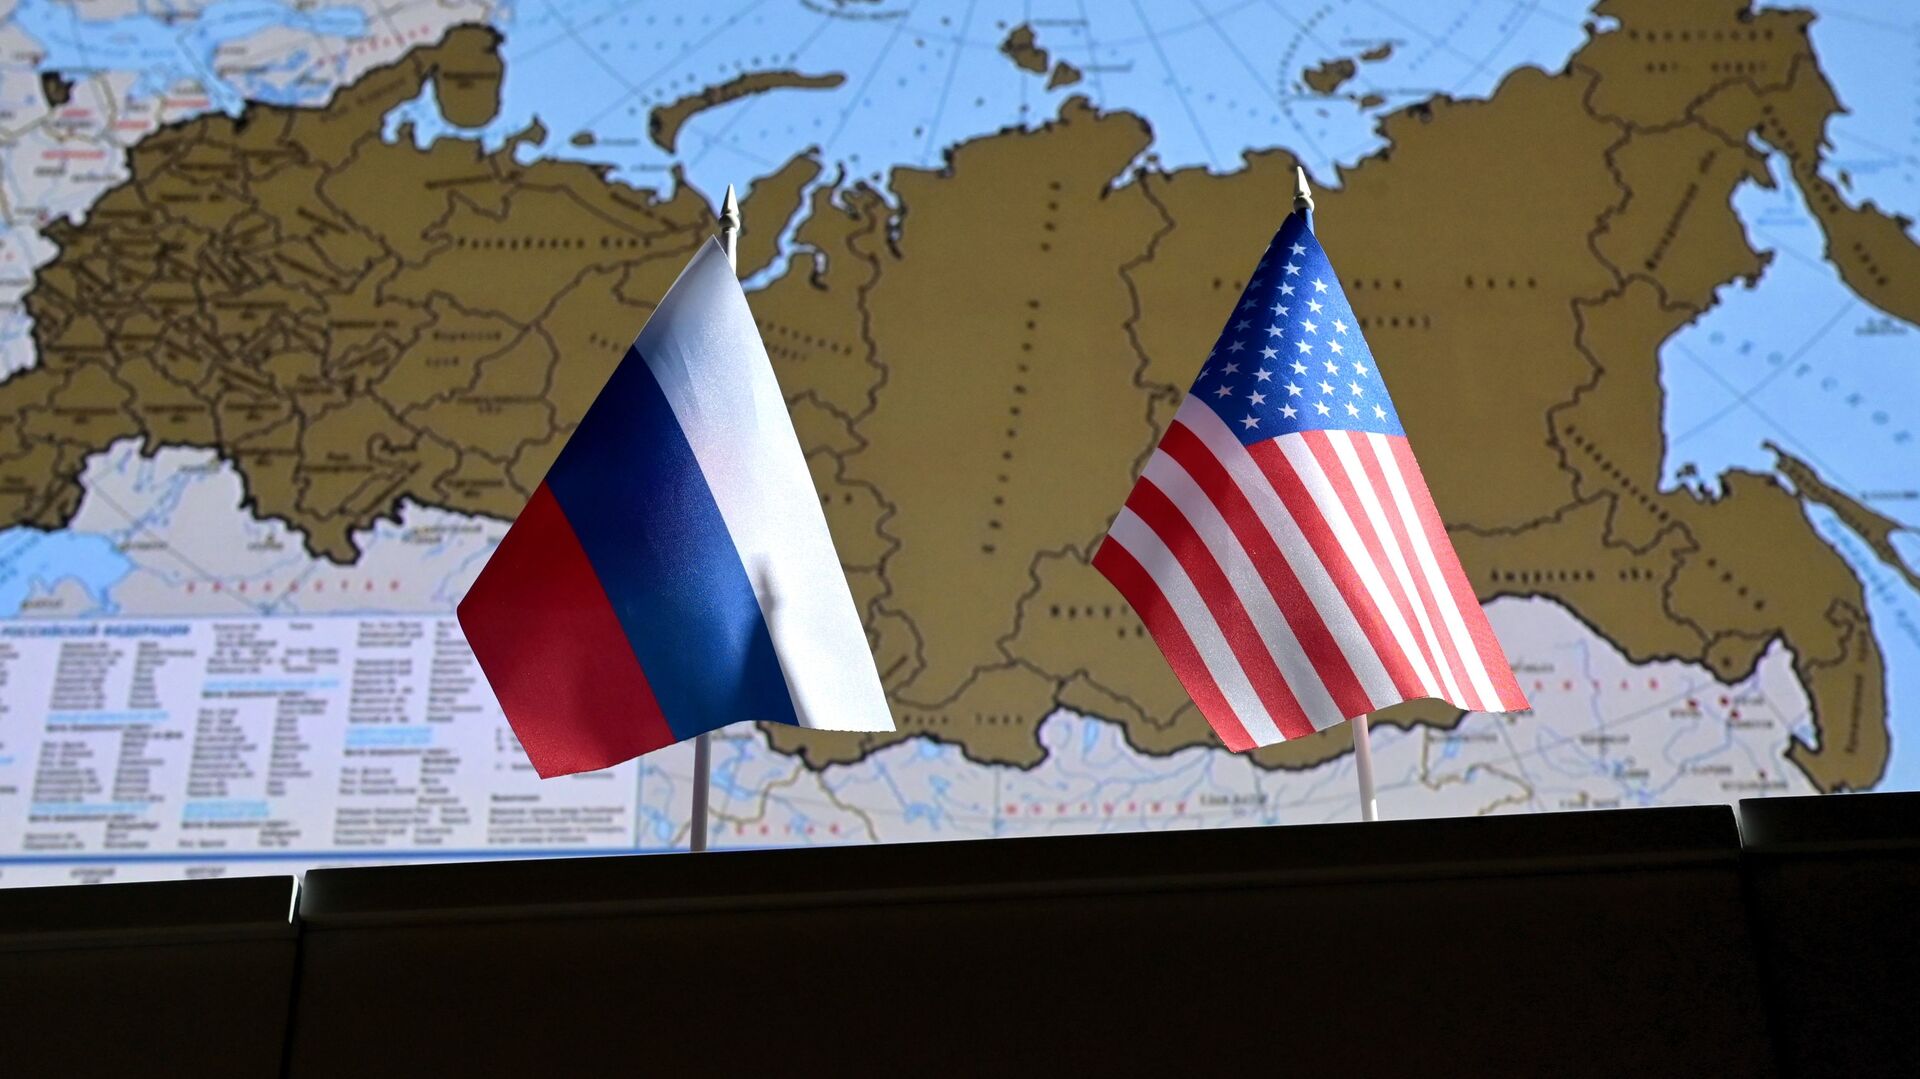 Государственные флаги России и США. - Sputnik Аҧсны, 1920, 26.05.2021